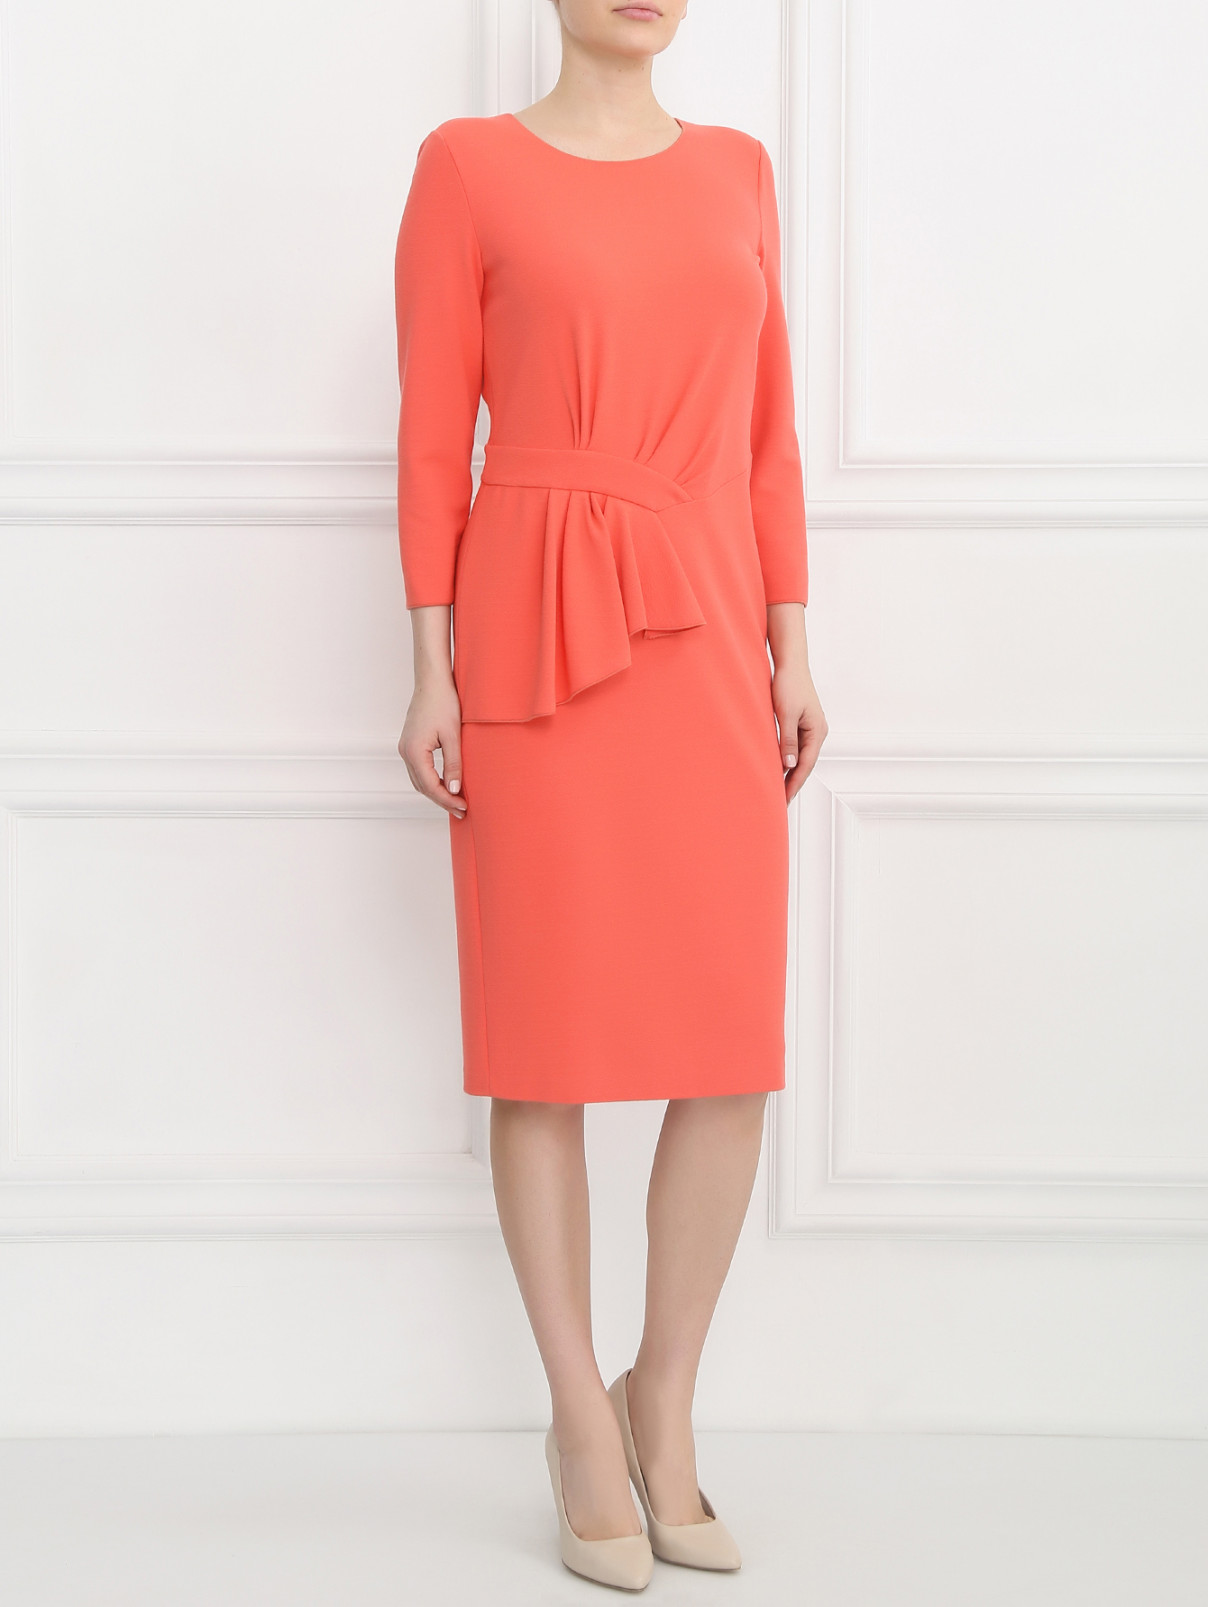 Платье с драпировкой Armani Collezioni  –  Модель Общий вид  – Цвет:  Розовый